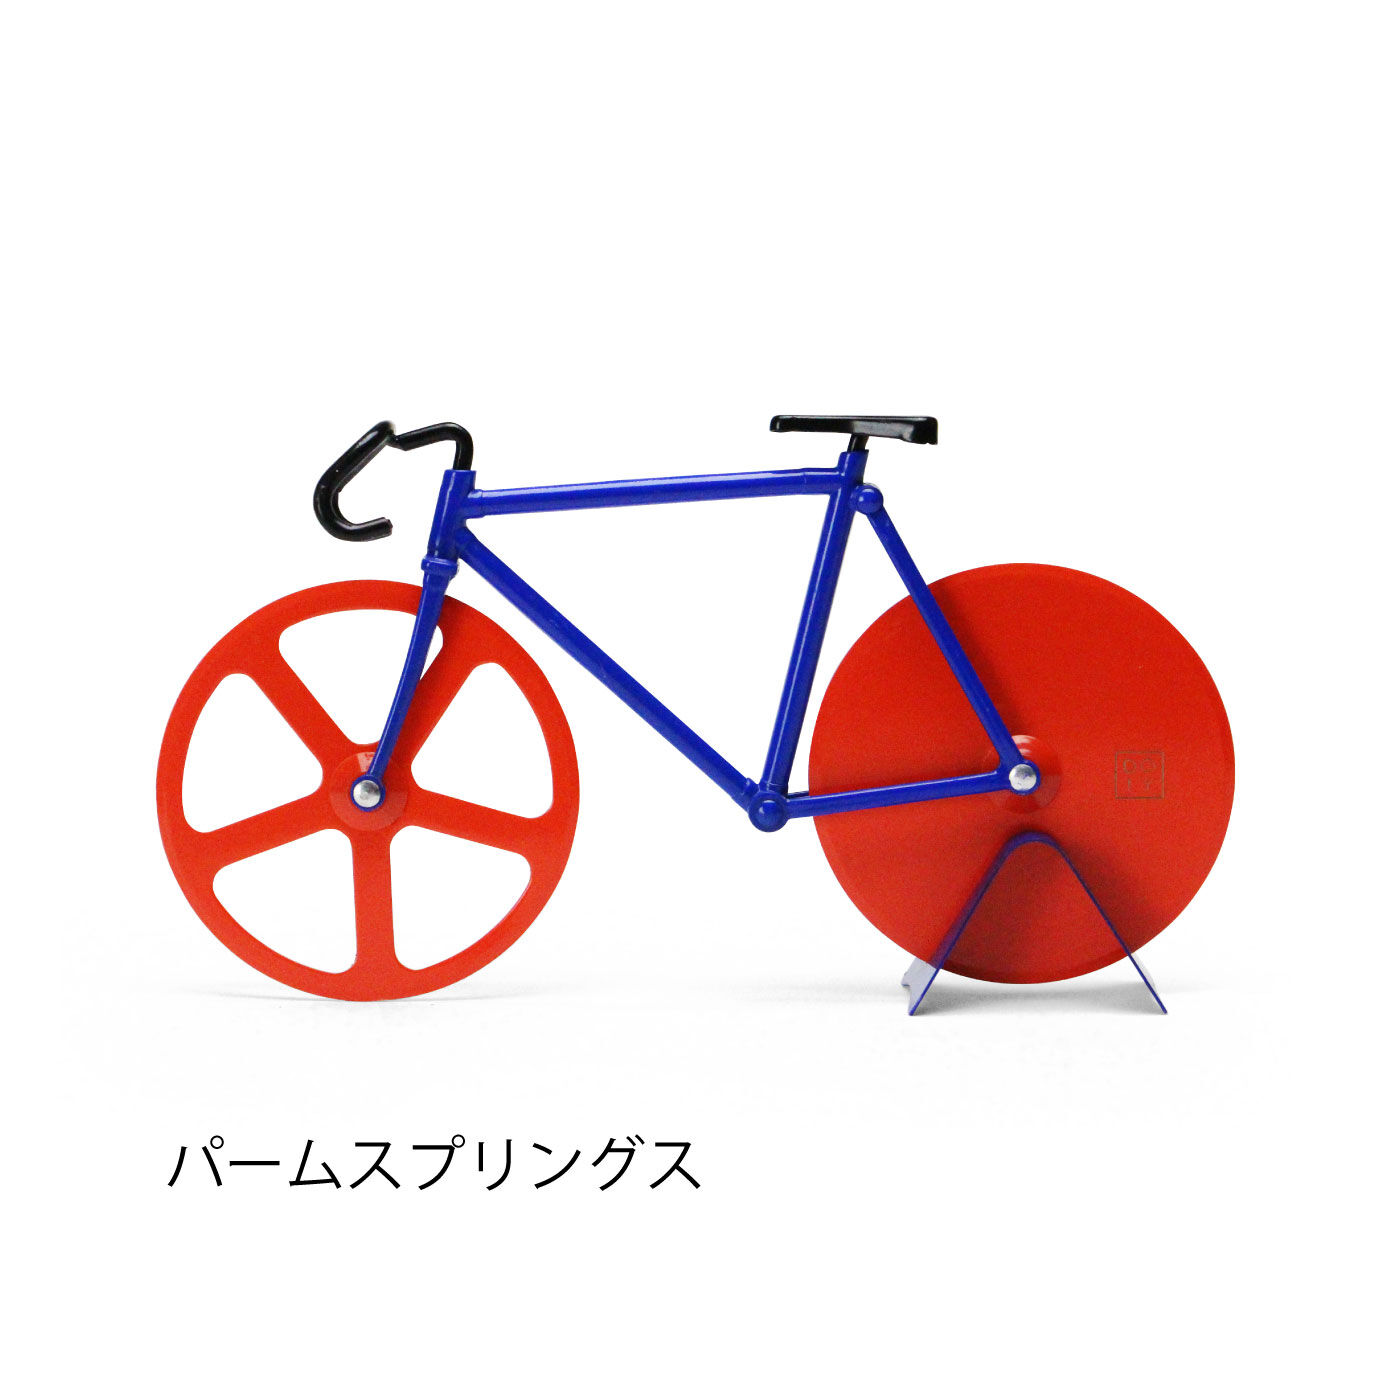 FELISSIMO PARTNERS|飾りたい!おしゃれすぎる自転車ピザカッター